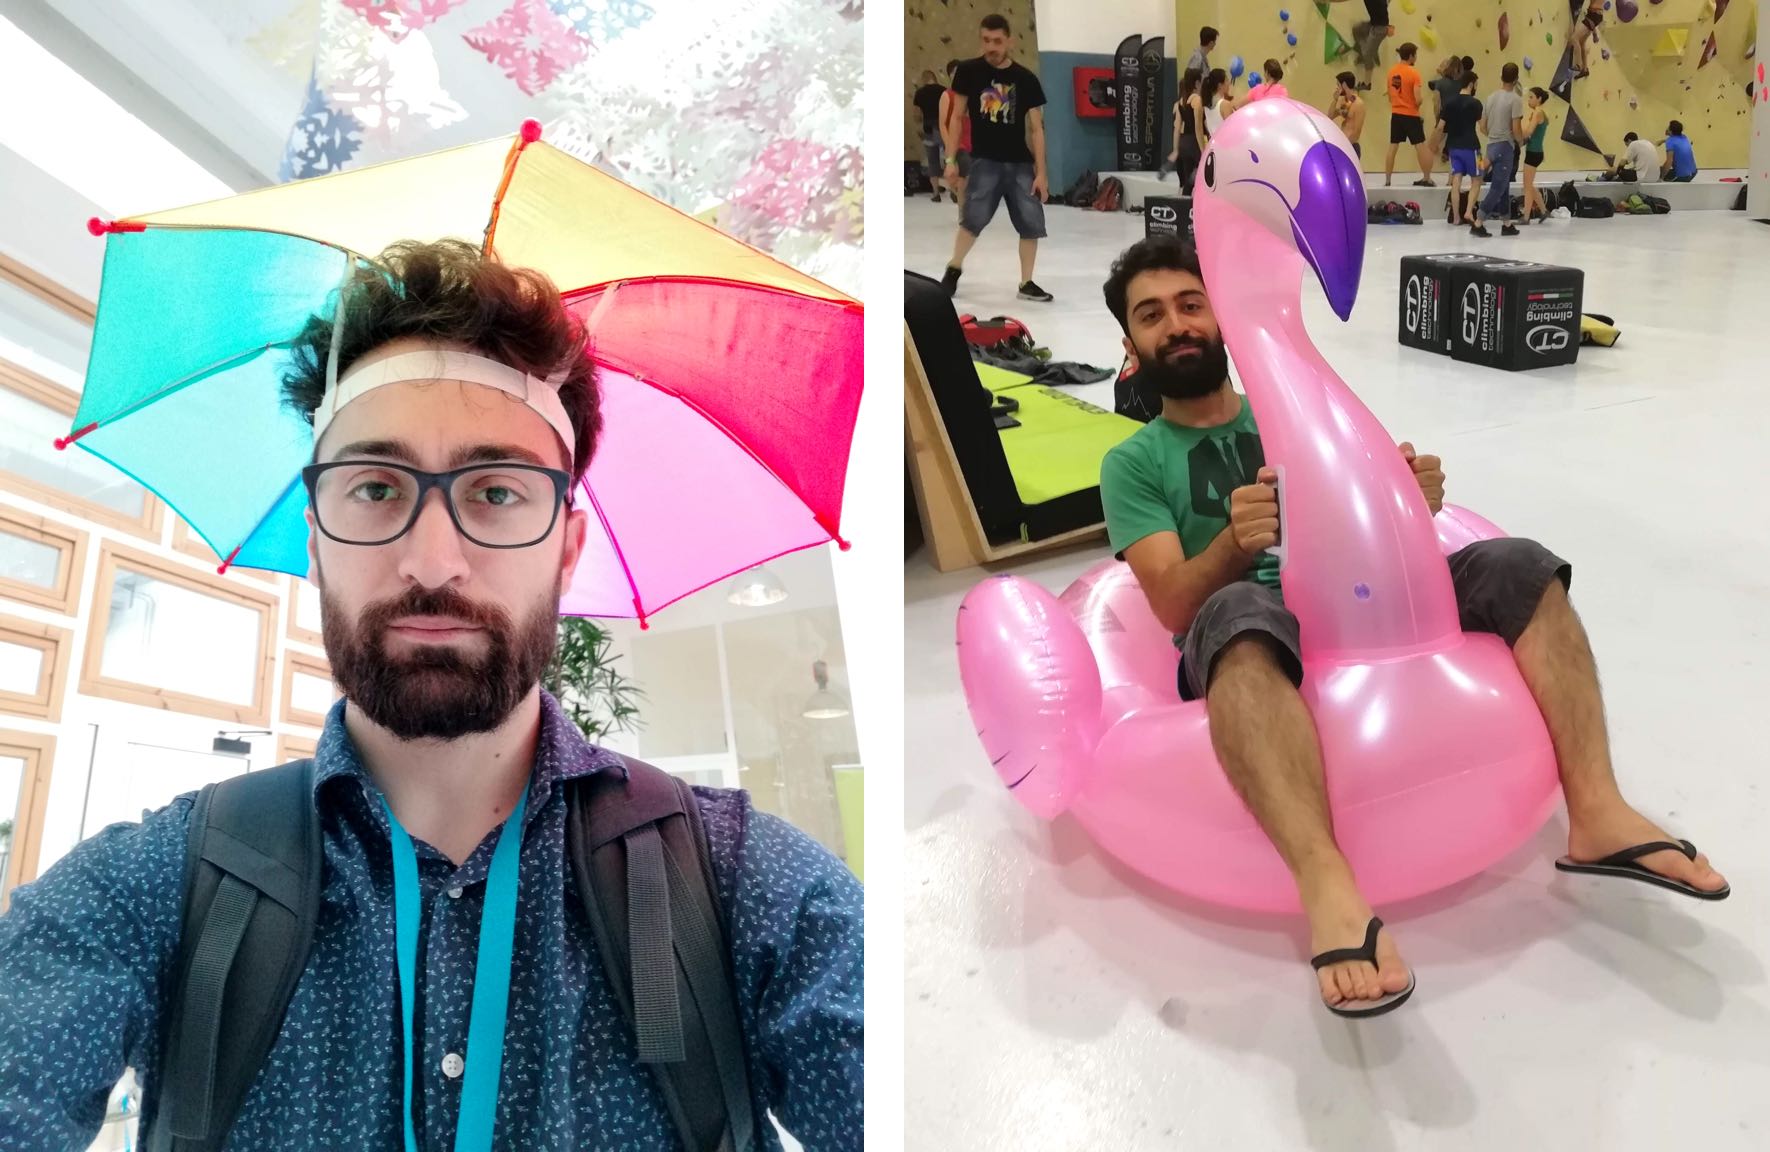 Es sind zwei Fotos zu sehen: AUf der linken Seite trägt Antonio einen bunten Regenschrim-Hut. Auf der rechten Seite sitzt er auf einem aufblasbaren Flamingo.